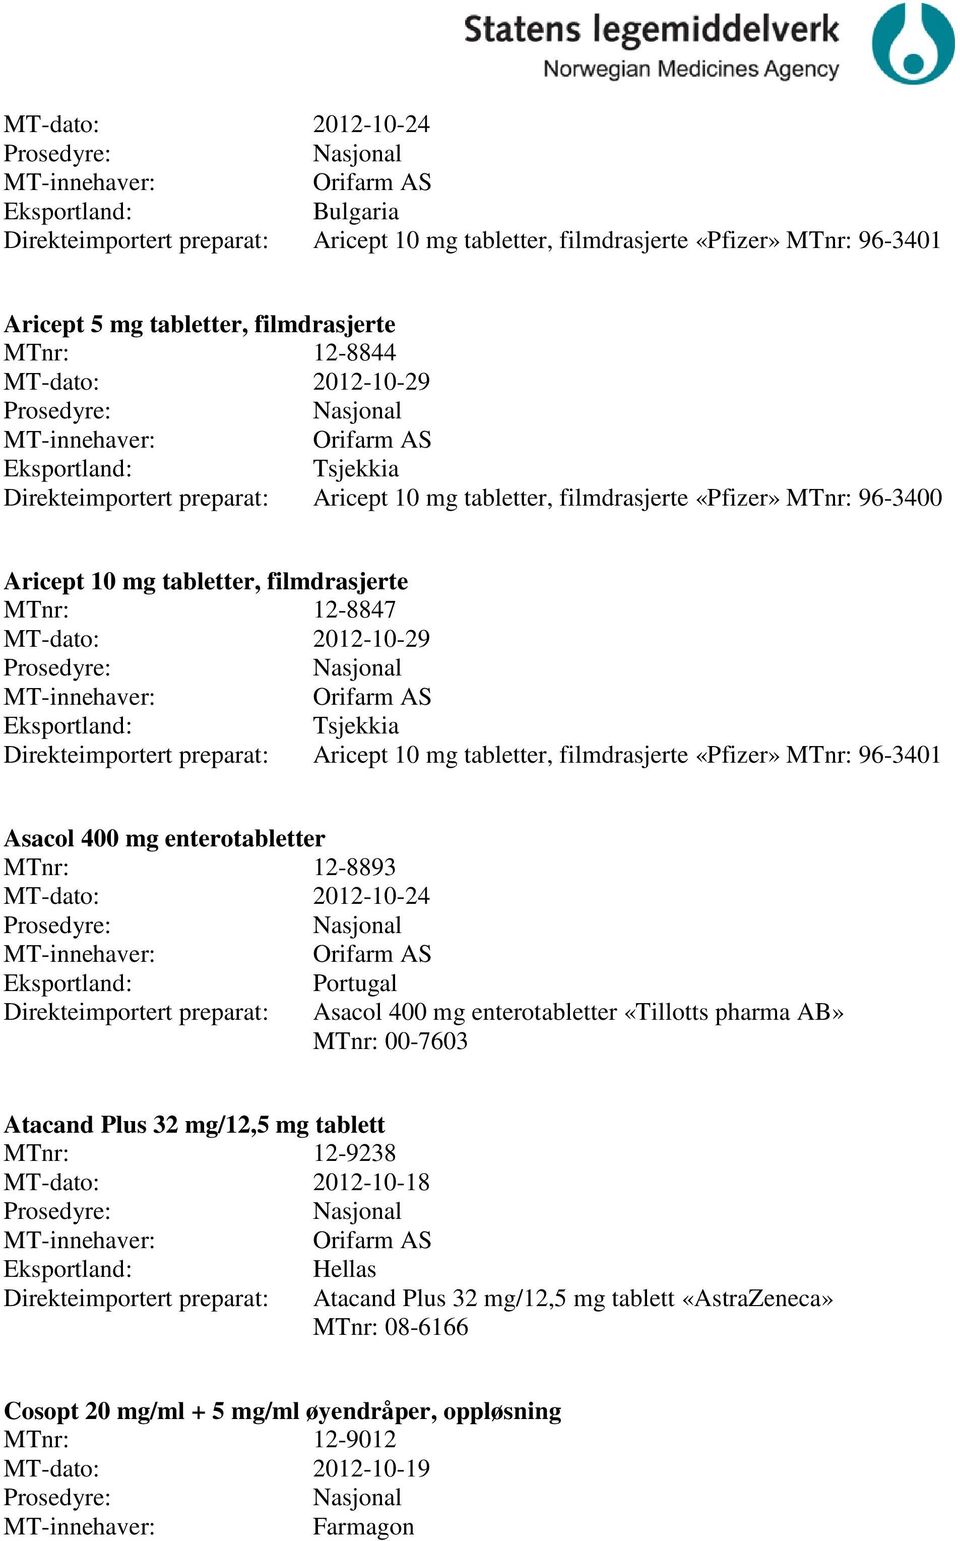 96-3401 Asacol 400 mg enterotabletter MTnr: 12-8893 MT-dato: 2012-10-24 Portugal Asacol 400 mg enterotabletter «Tillotts pharma AB» MTnr: 00-7603 Atacand Plus 32 mg/12,5 mg tablett MTnr: